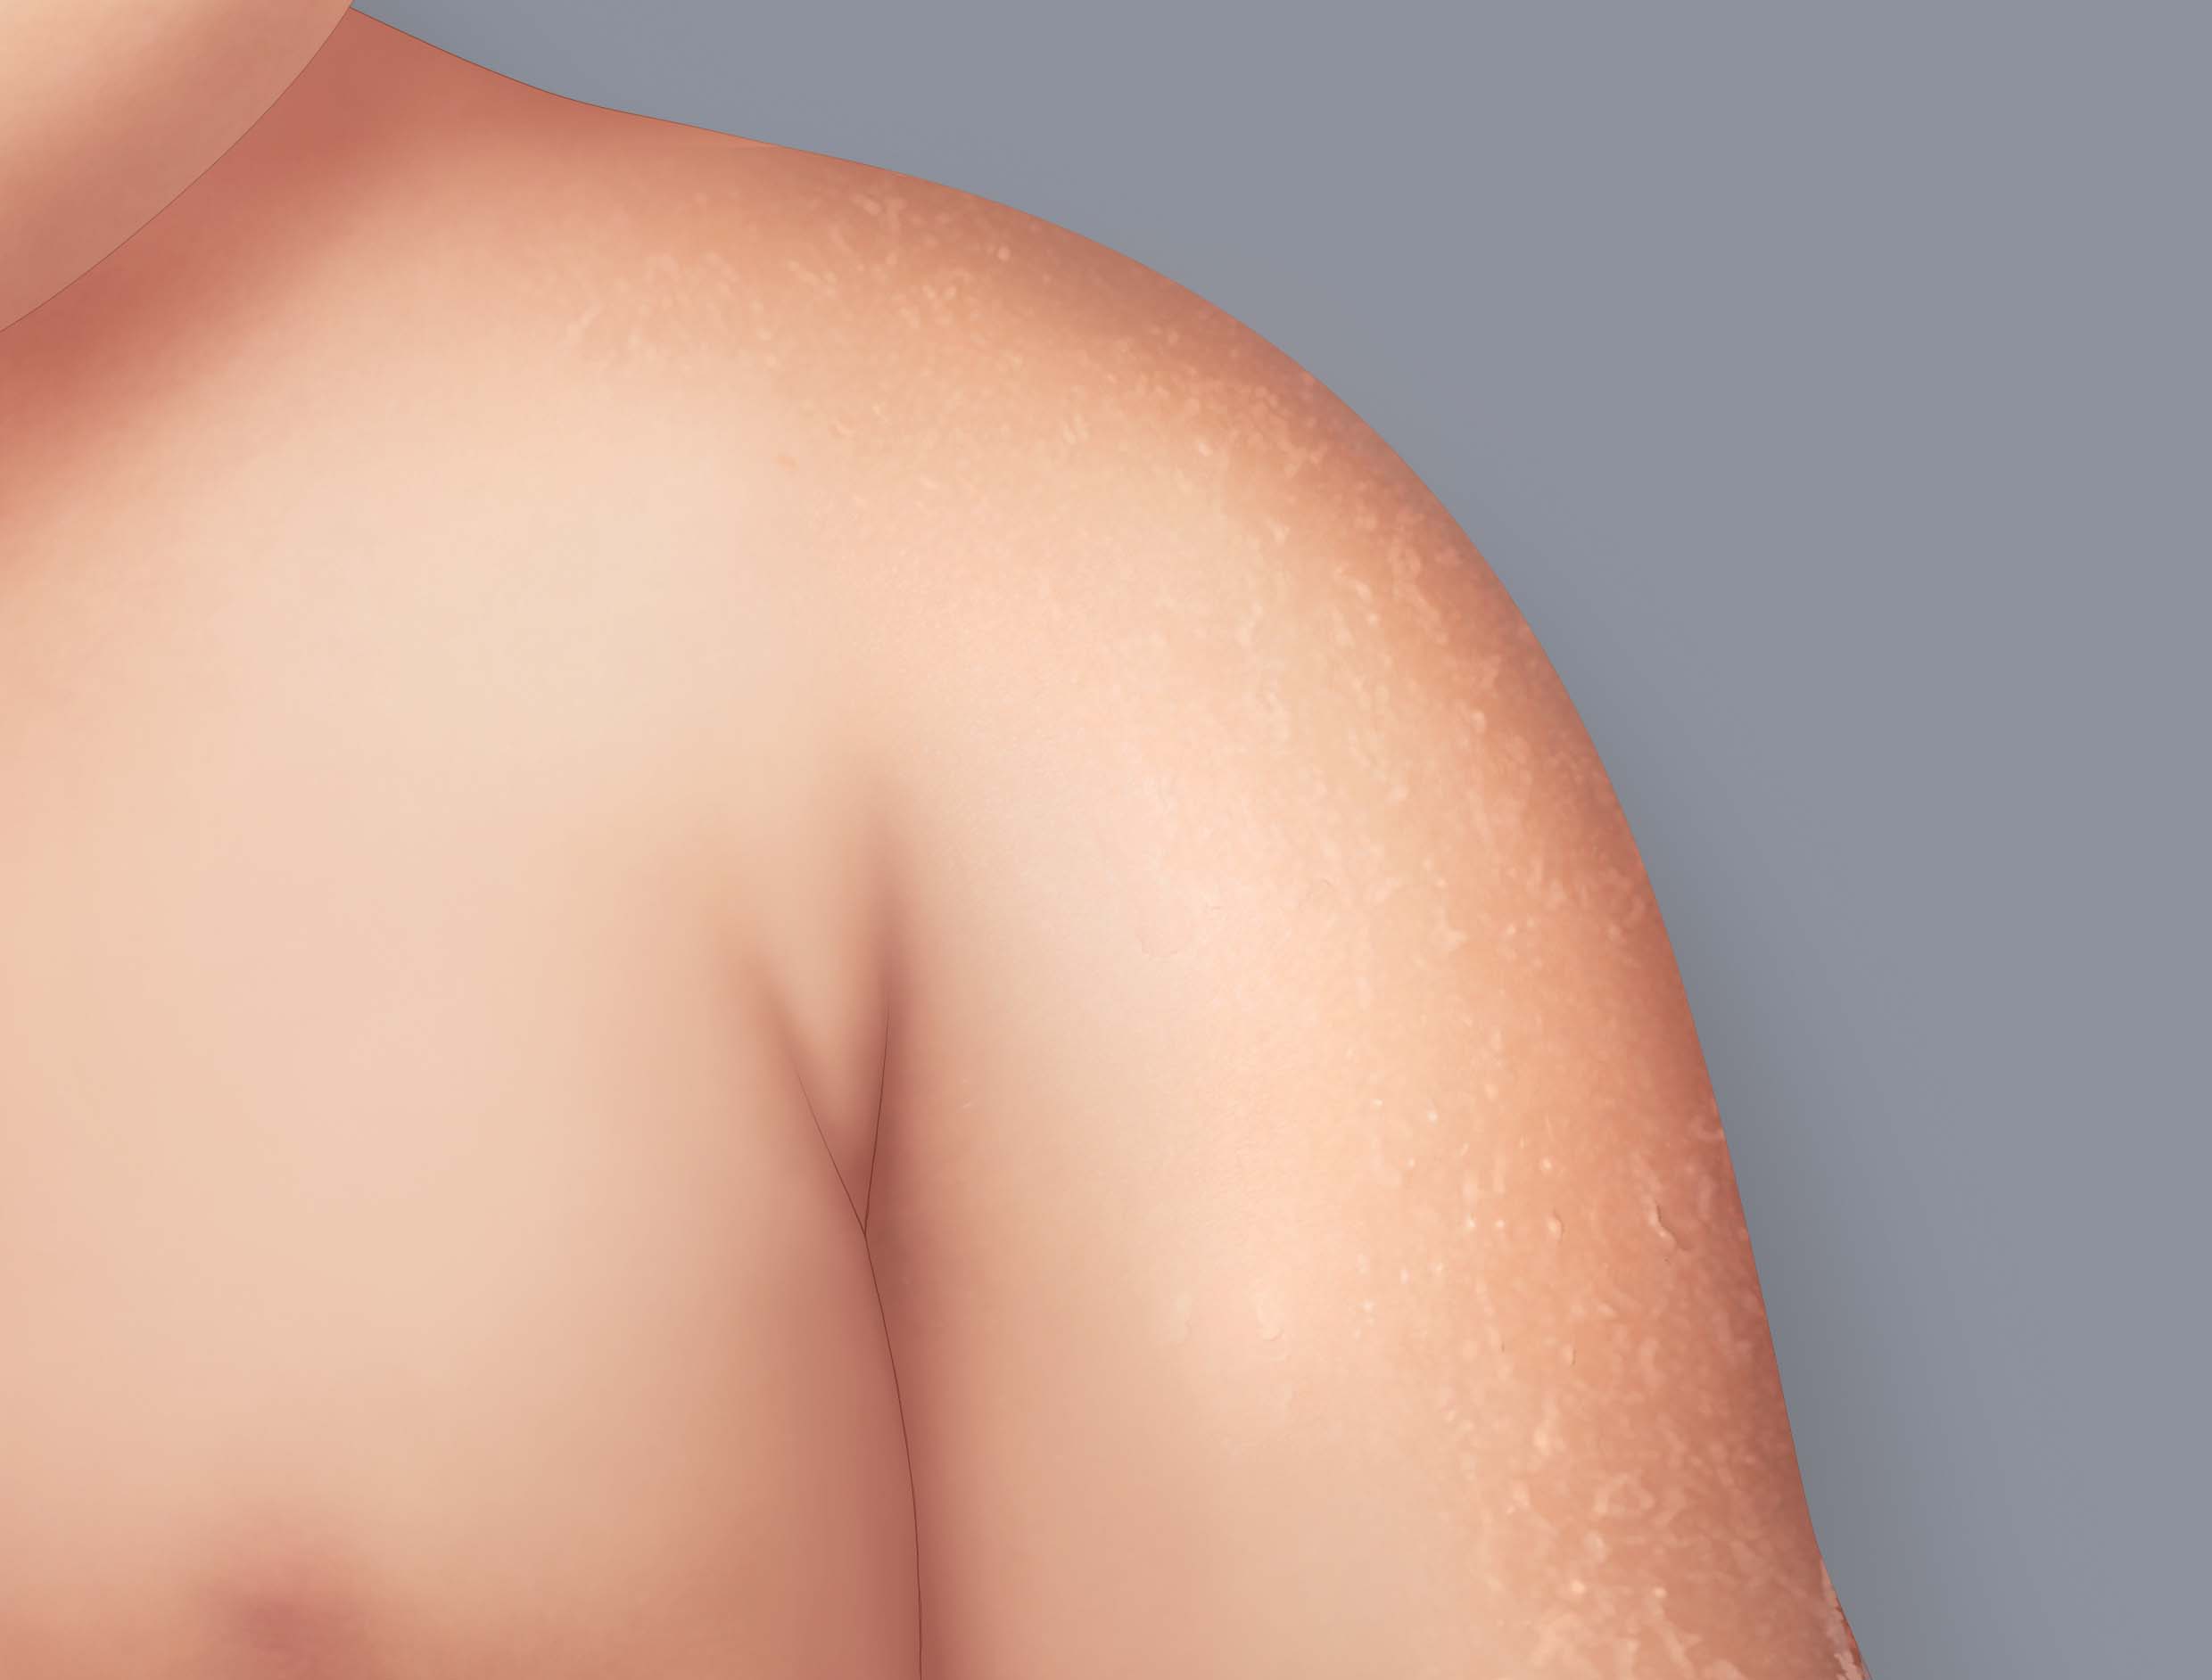 Symptome des atopischen Ekzems: Trockene bis sehr trockene Haut oder Xerosis